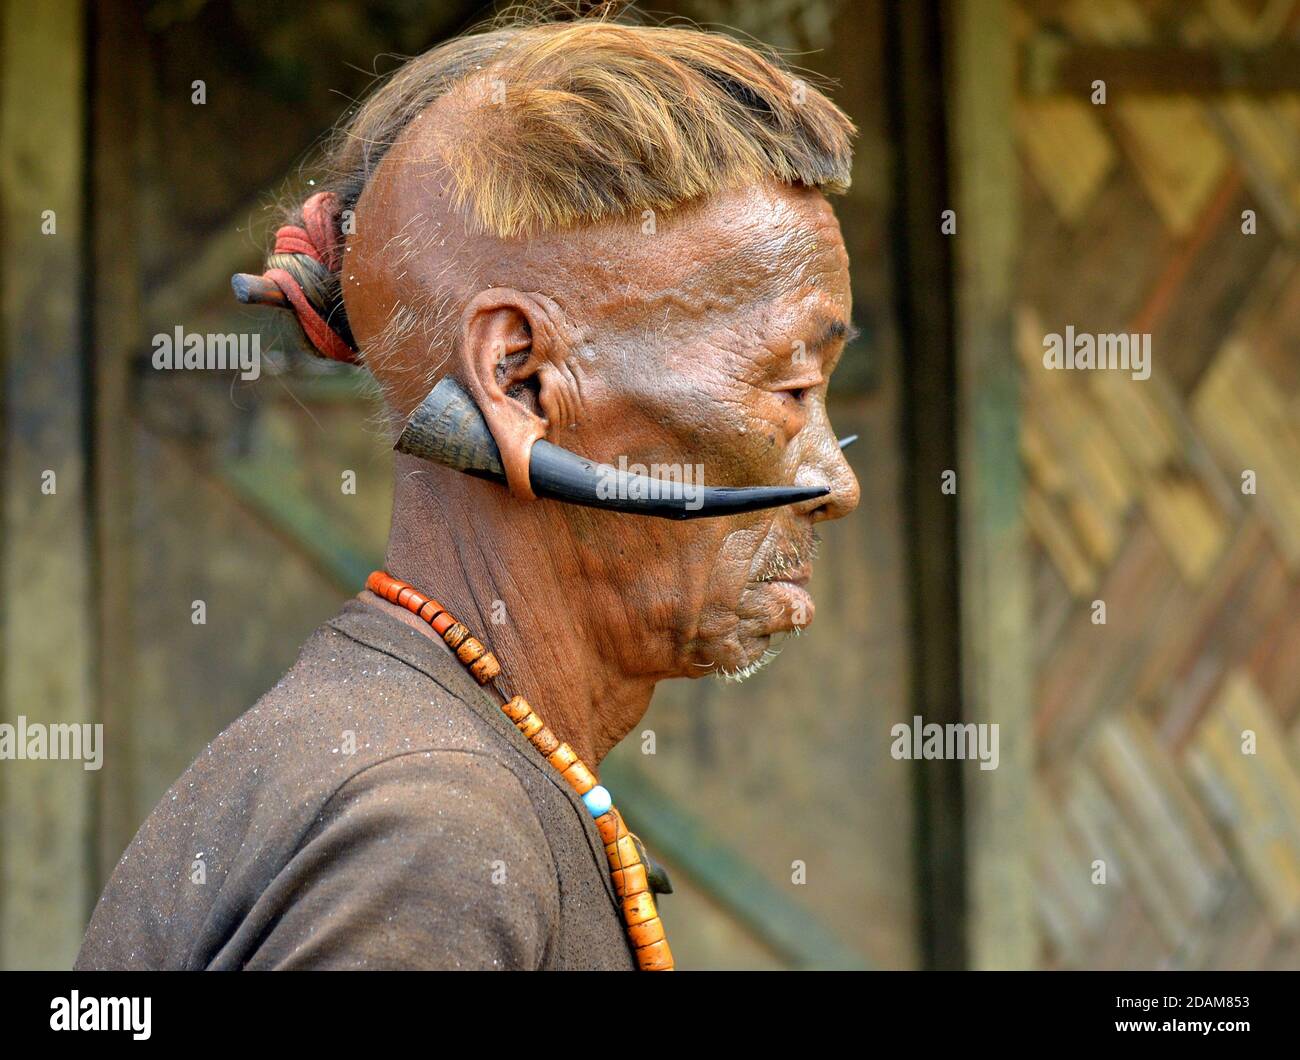 Alter Konyak Naga Krieger und Ex-Headhunter mit Gesichts-Tattoo, Tribal Frisur und Hirsch Hörner in seinen Ohrläppchen Posen für die Kamera (Profilfoto). Stockfoto